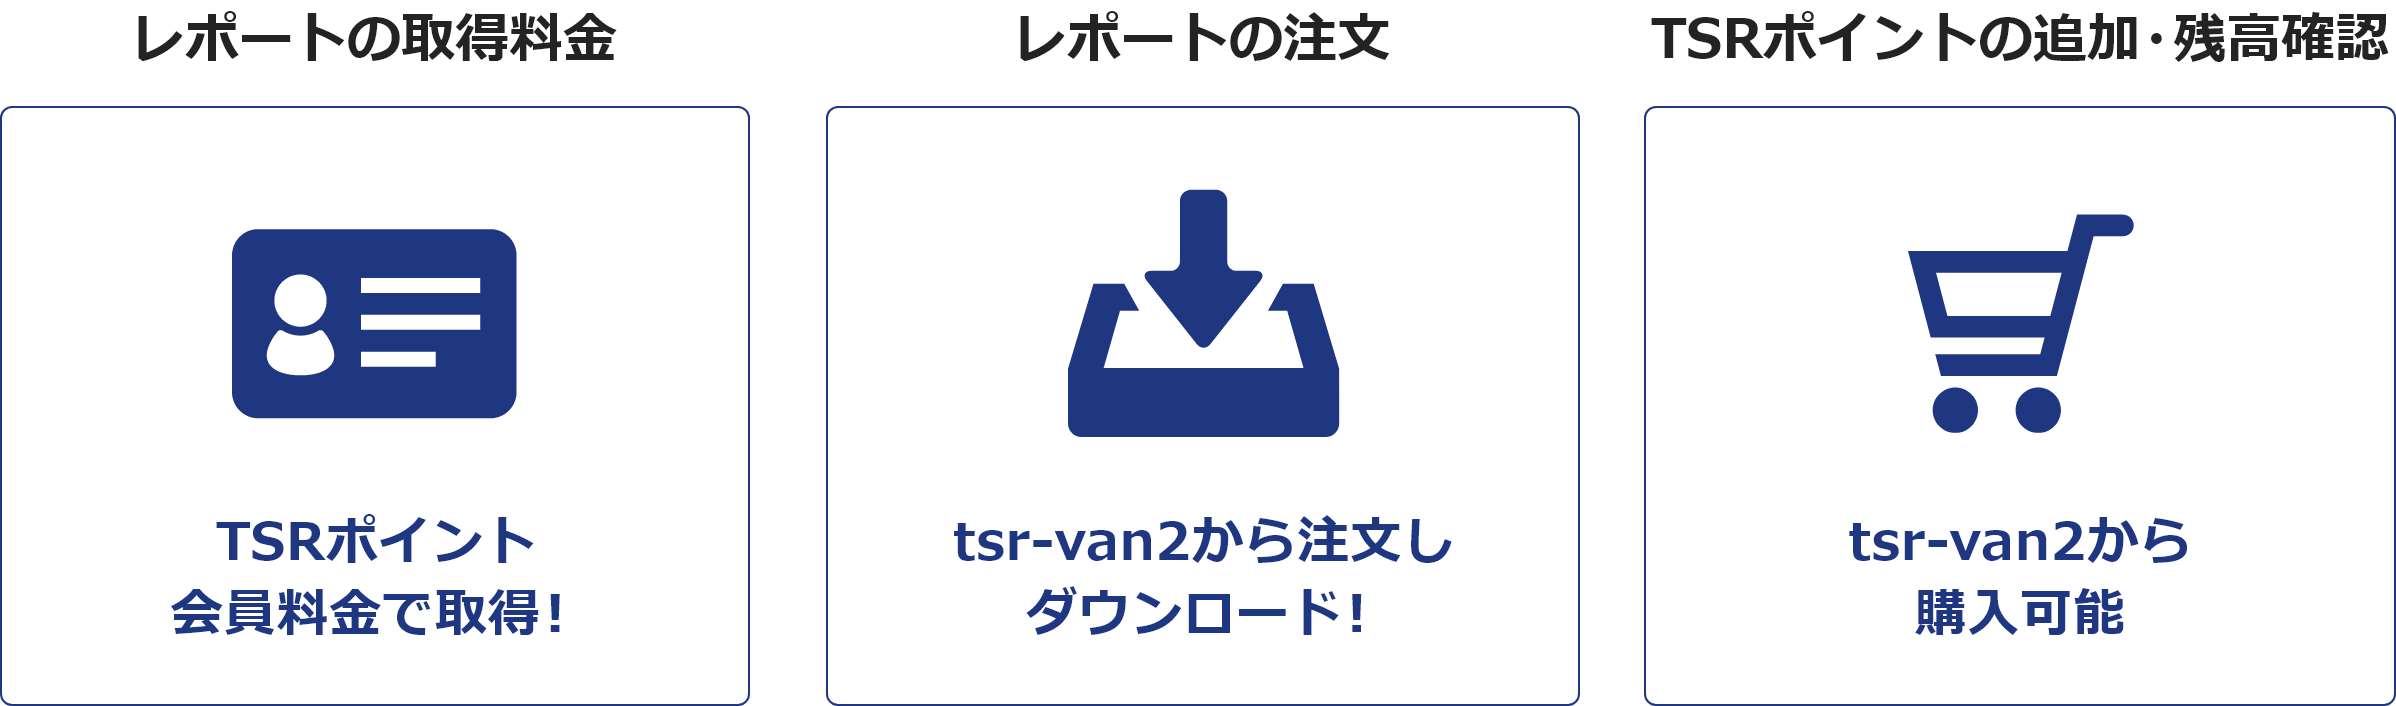 TSRポイント/tsr-van2併用イメージ